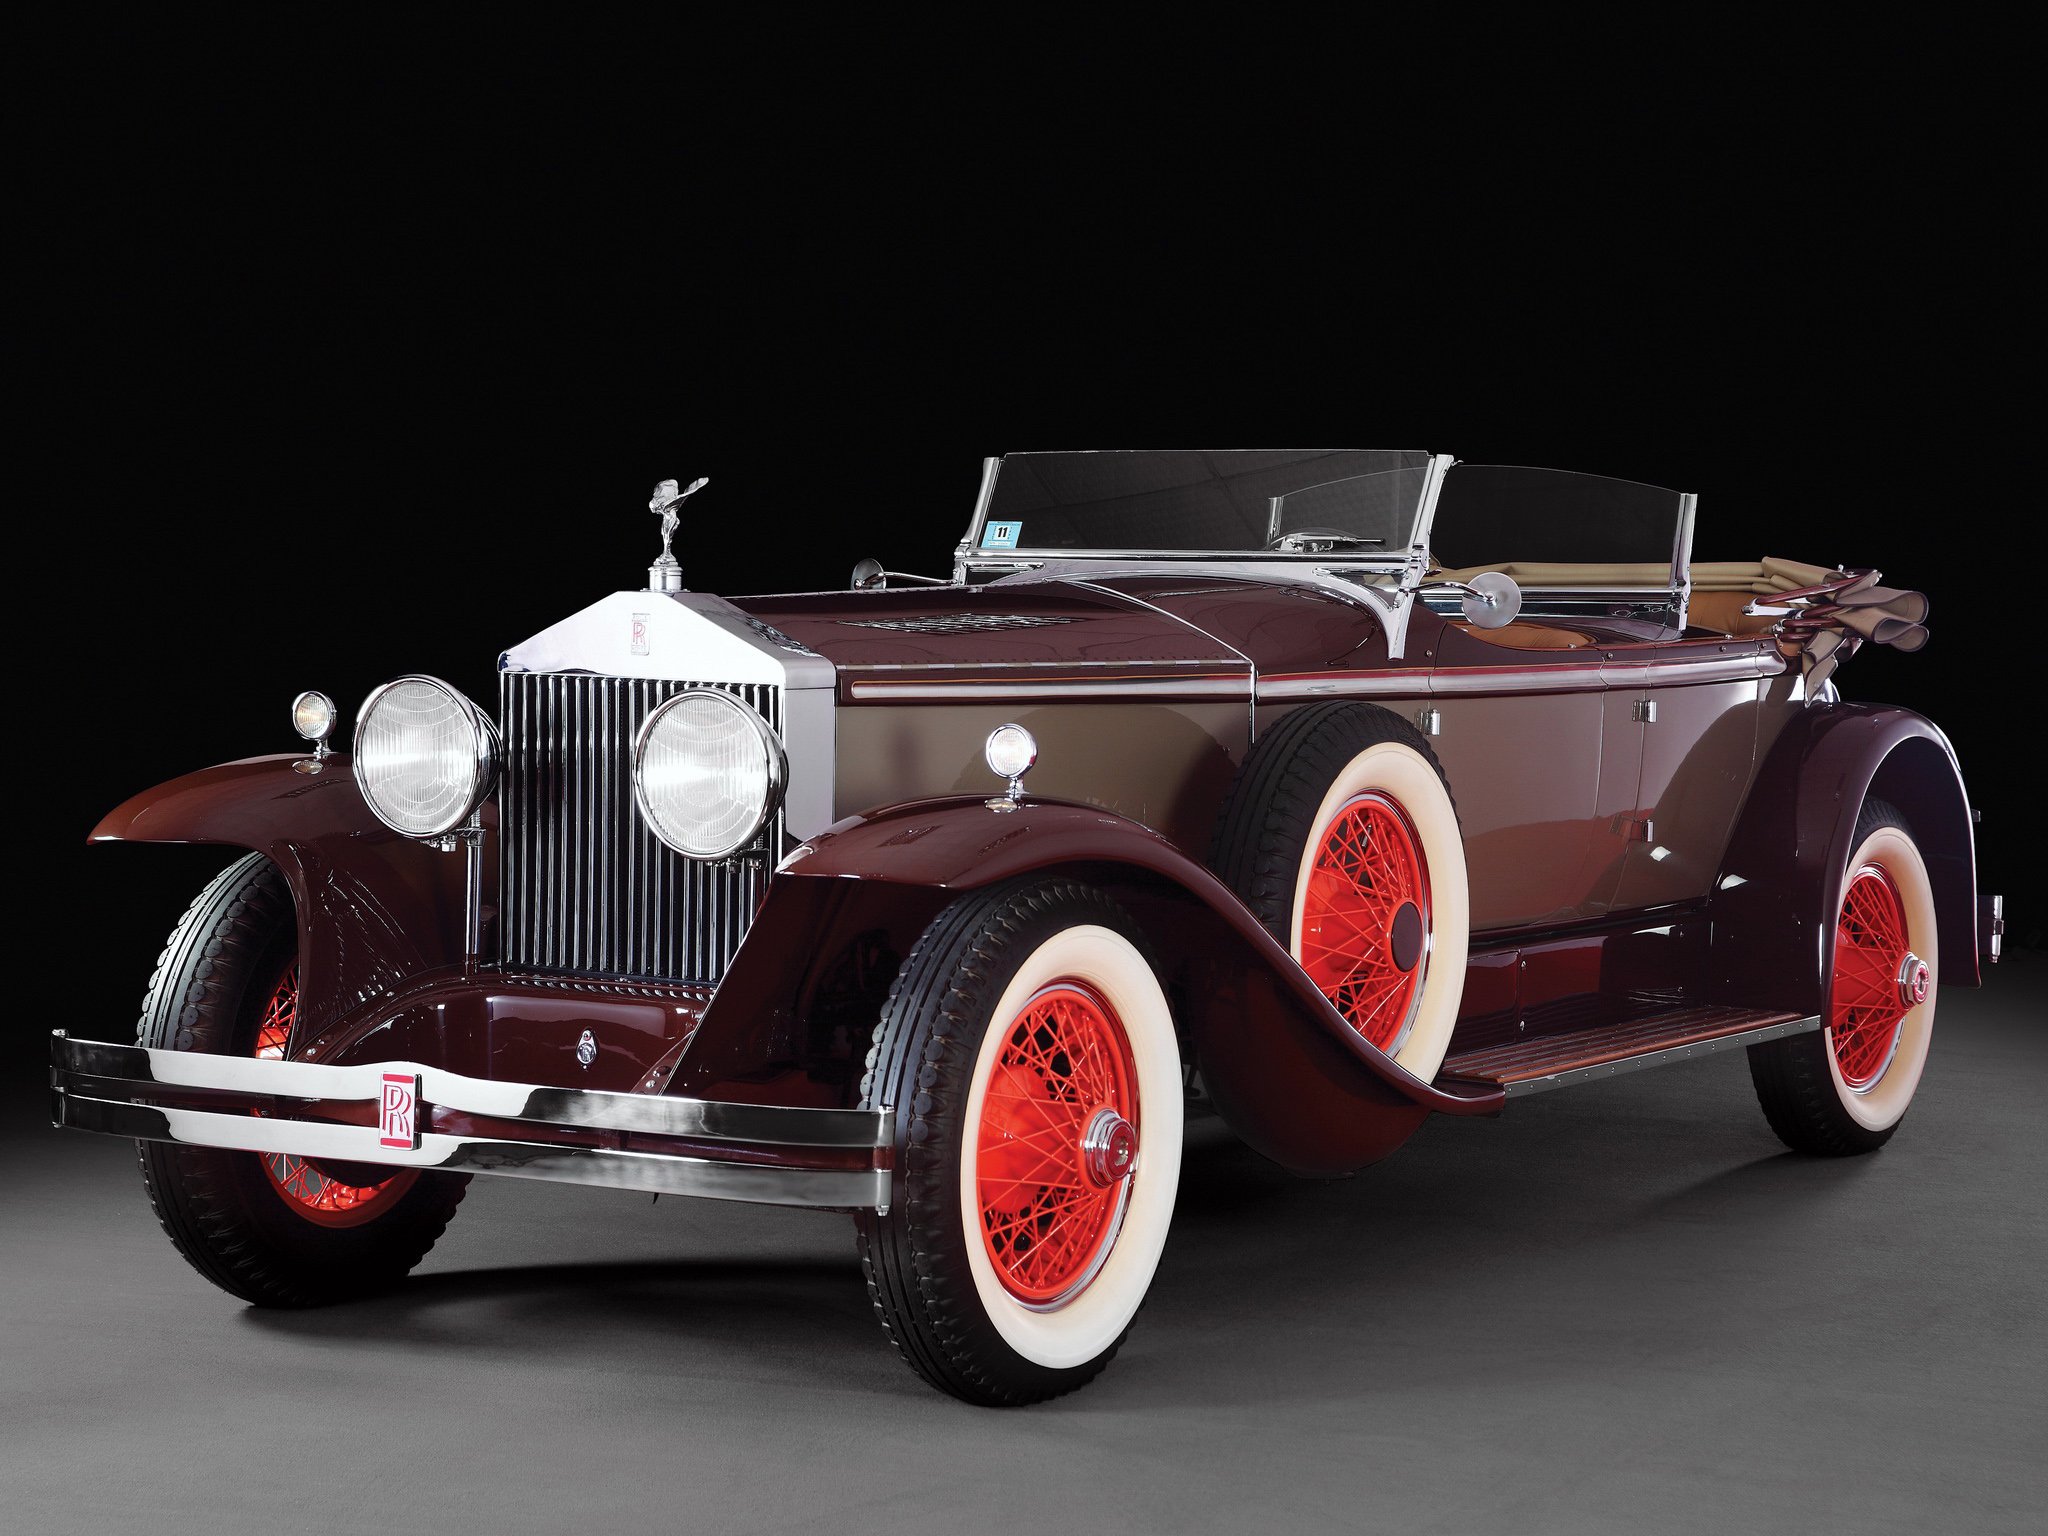 Старые роллс. Rolls Royce Phantom 1 1929. Rolls Royce Phantom 1 Ascot Tourer by Brewster 1929. 1929 Rolls-Royce Phantom i Ascot Tourer by Merrimac. Rolls Royce Phantom 1.